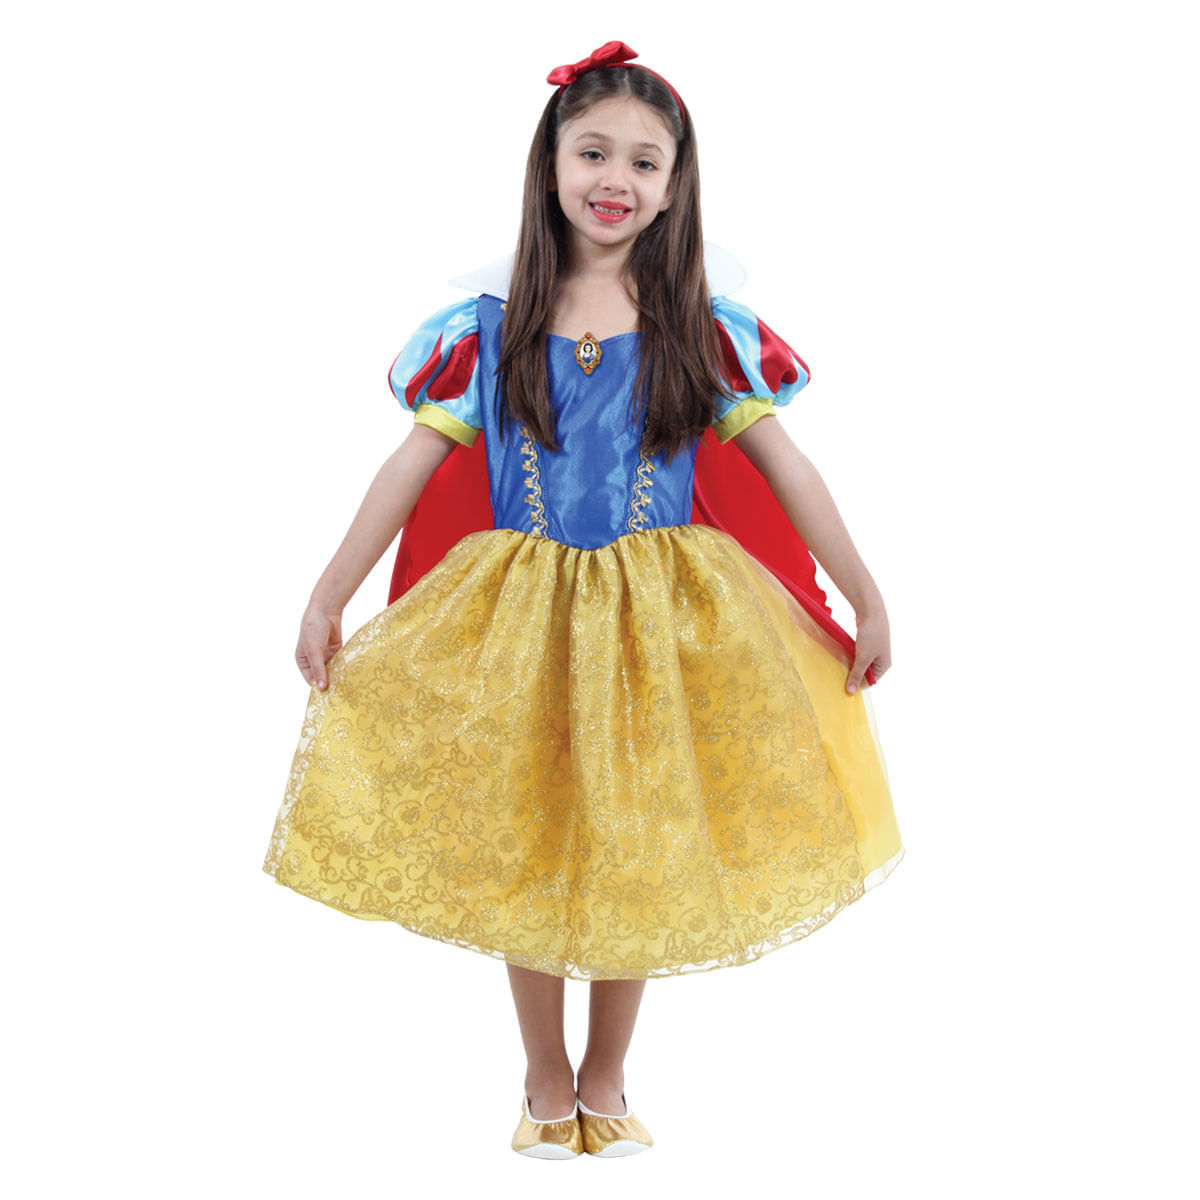 Fantasia Branca de Neve Infantil Super Luxo - Disney Princesas P / UNICA